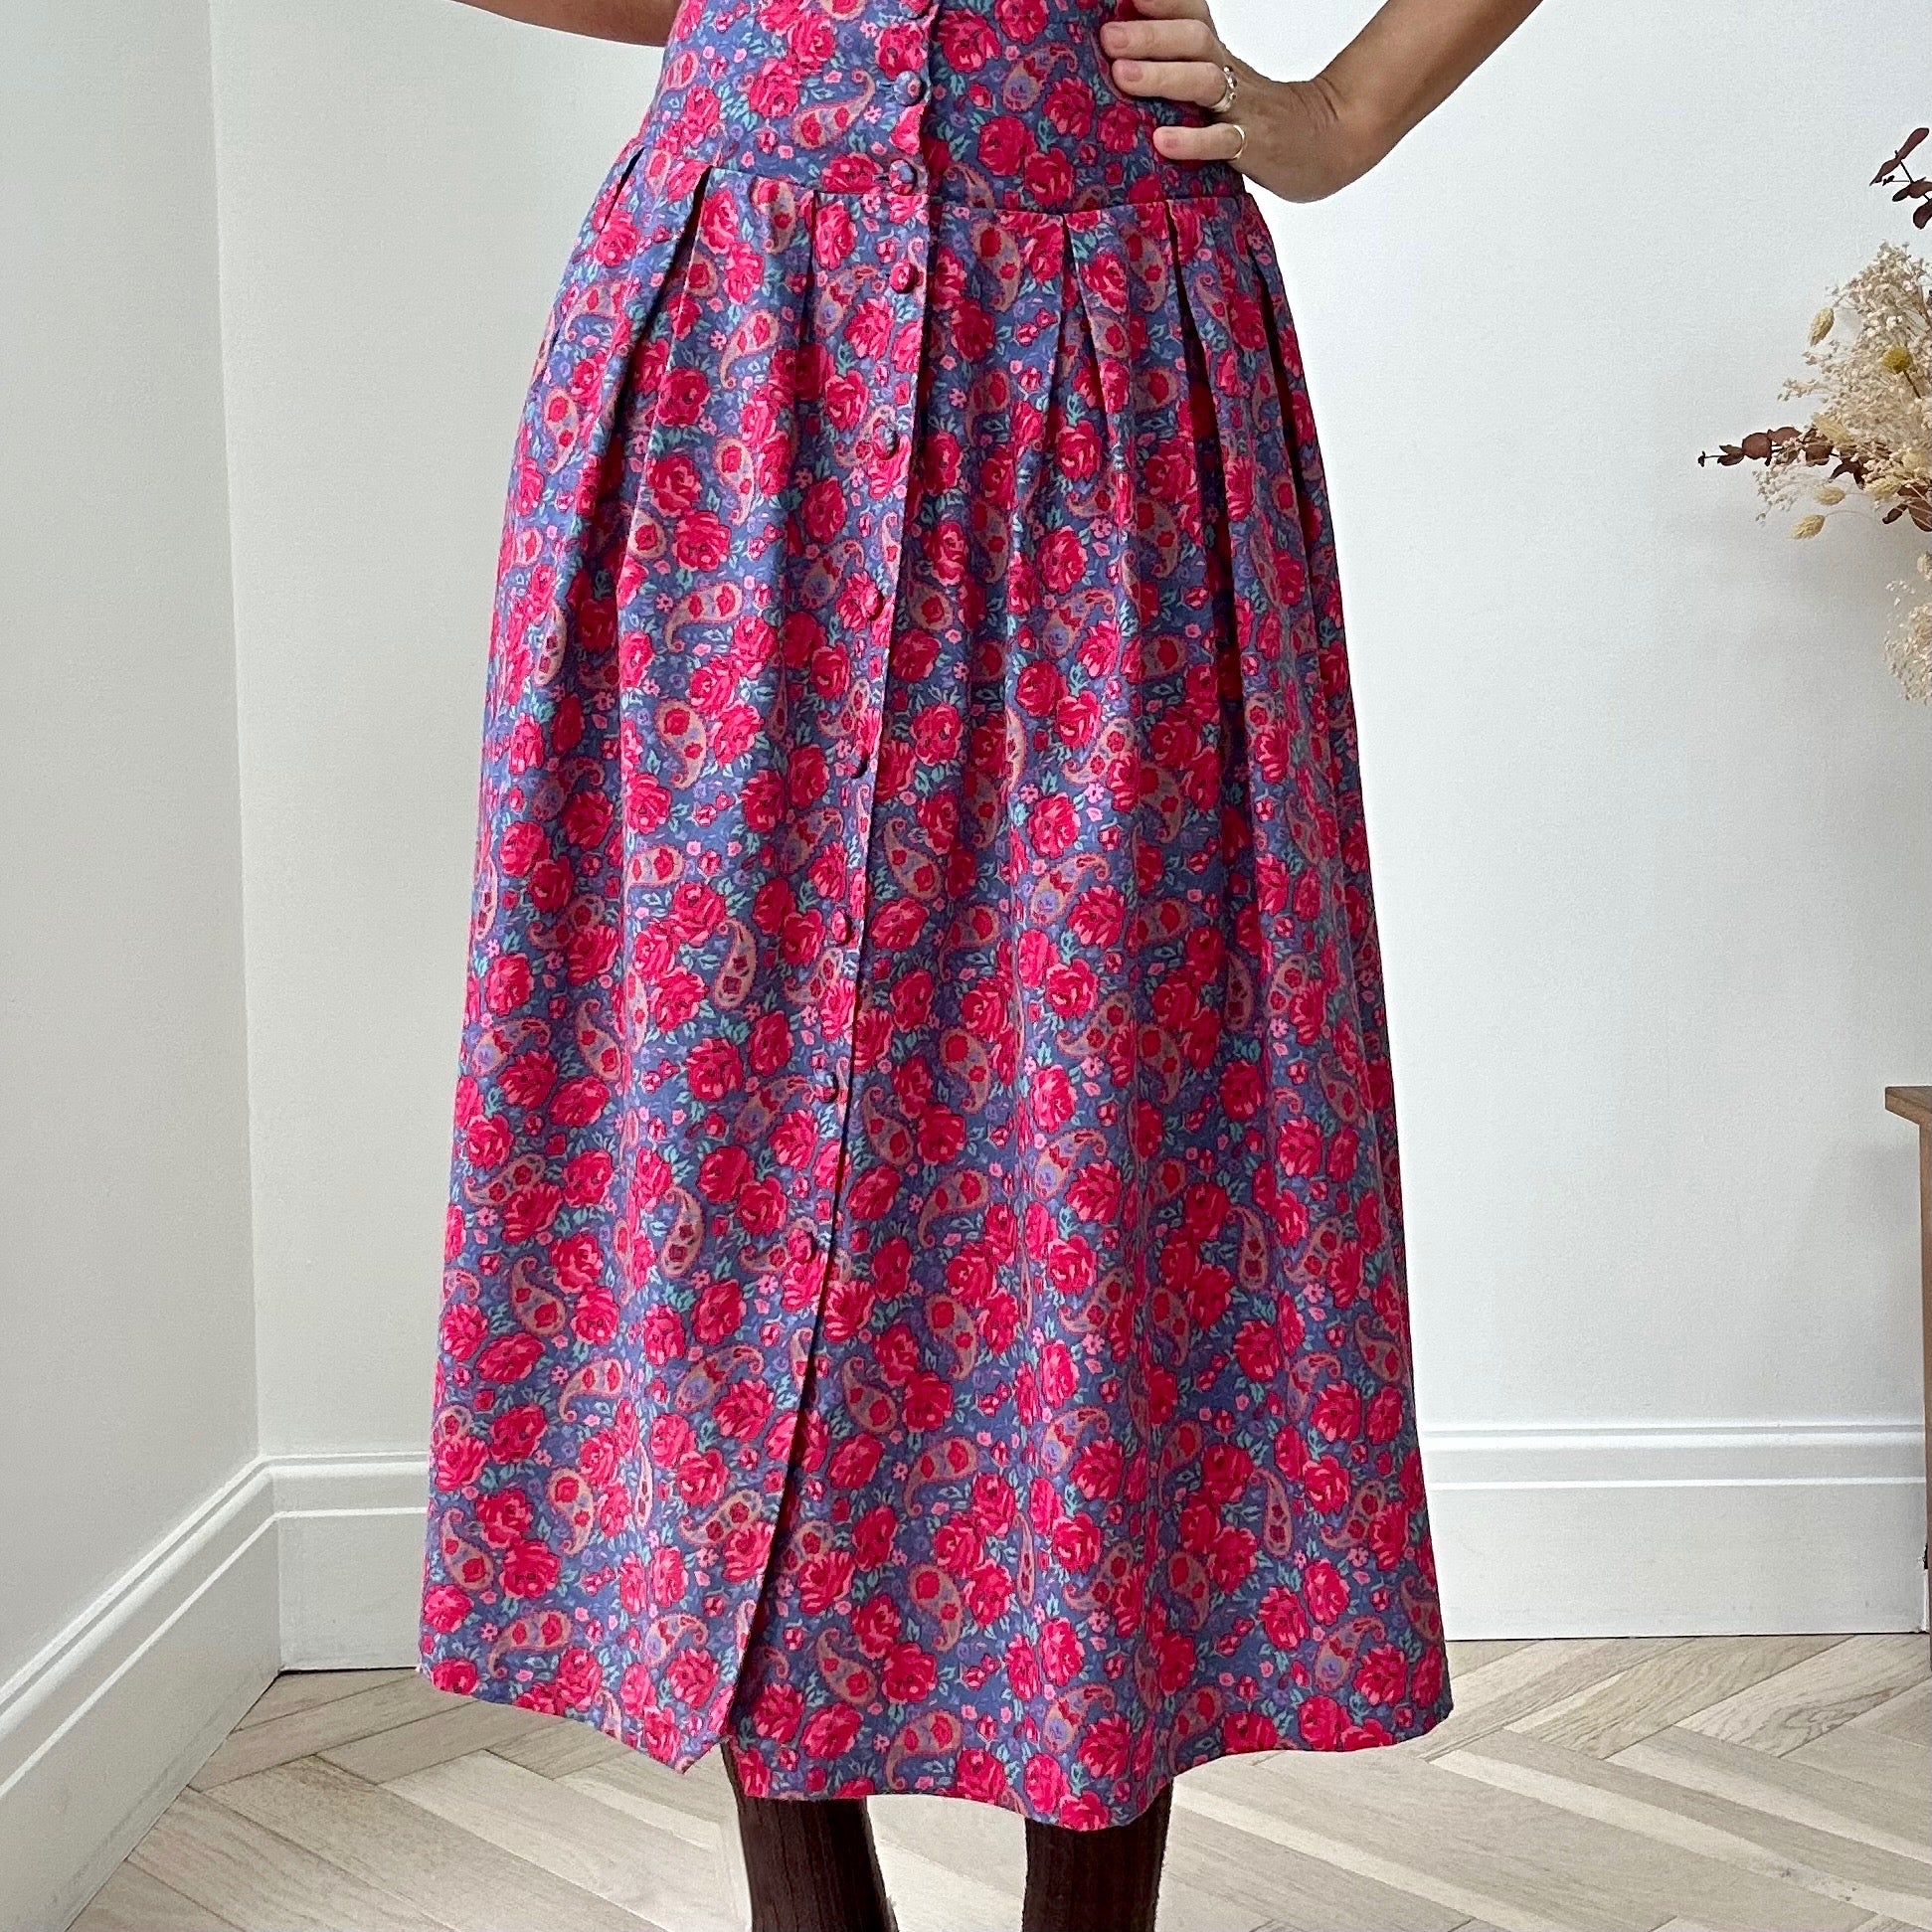 80s vintage Laura Ashley paisley patterned full skirt